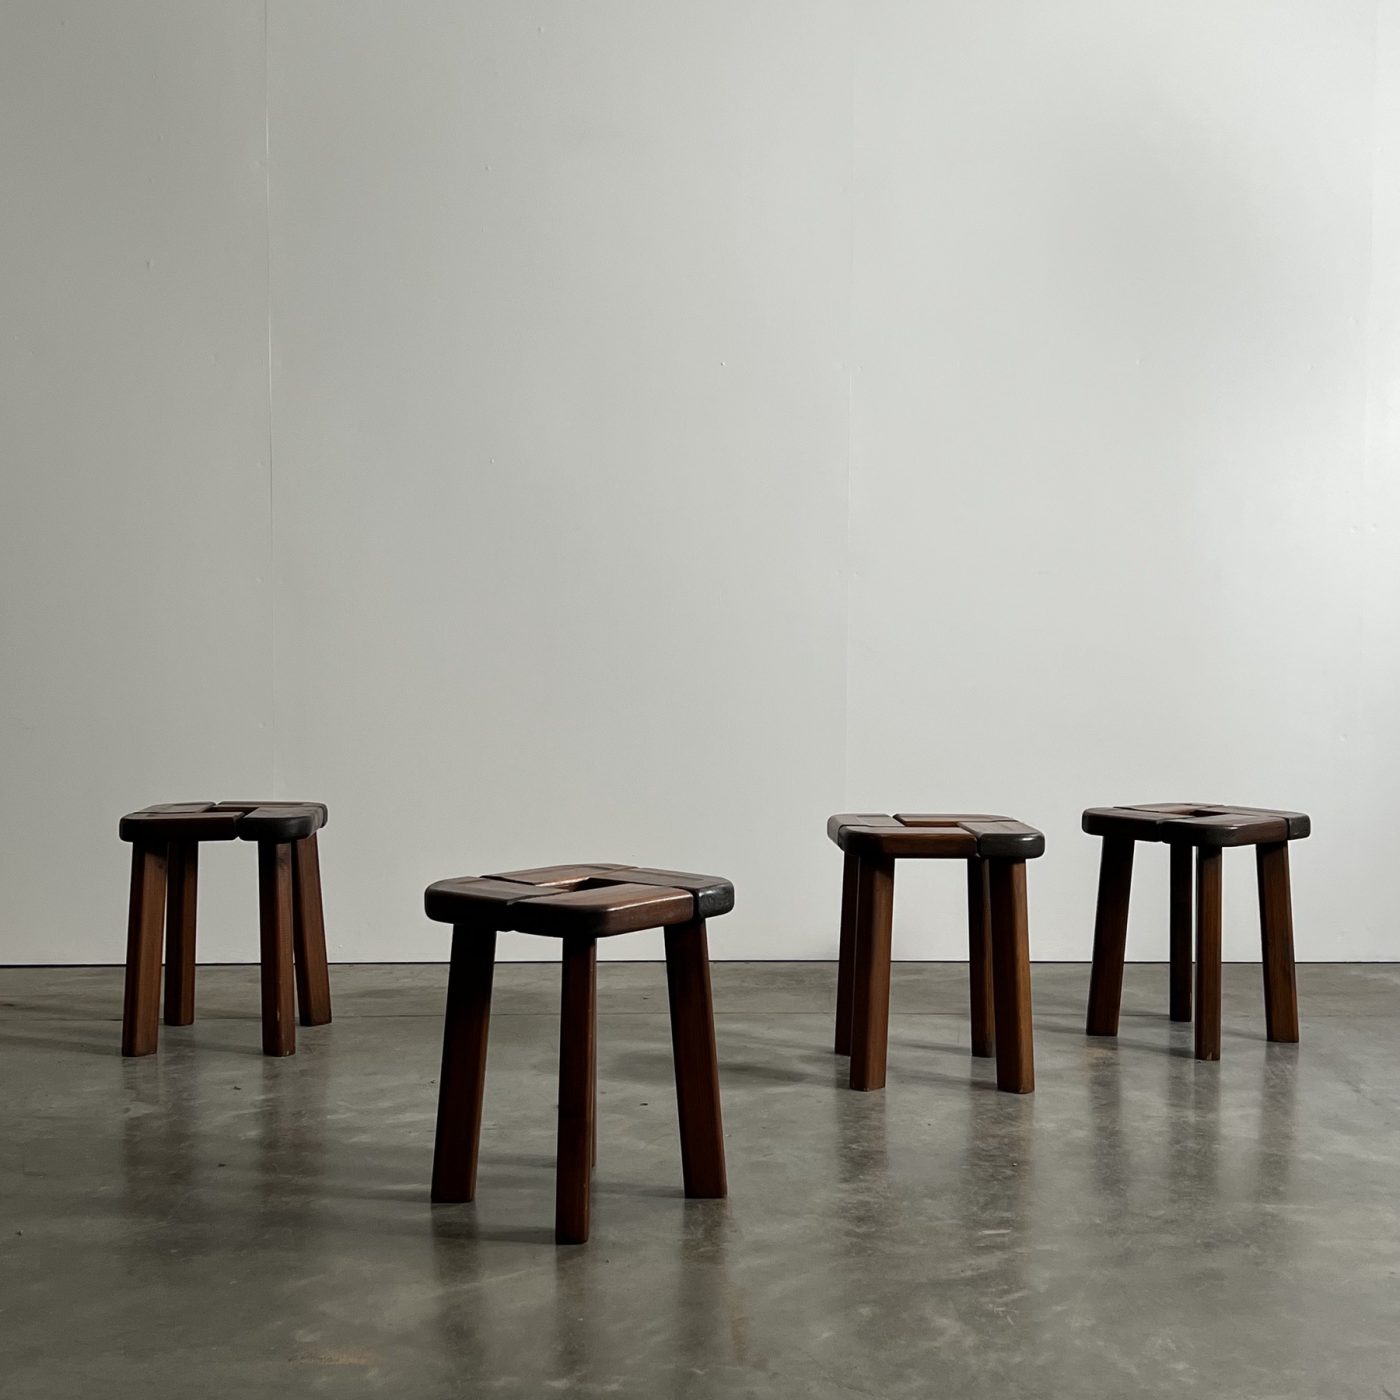 objet-vagabond-vintage-stools0001